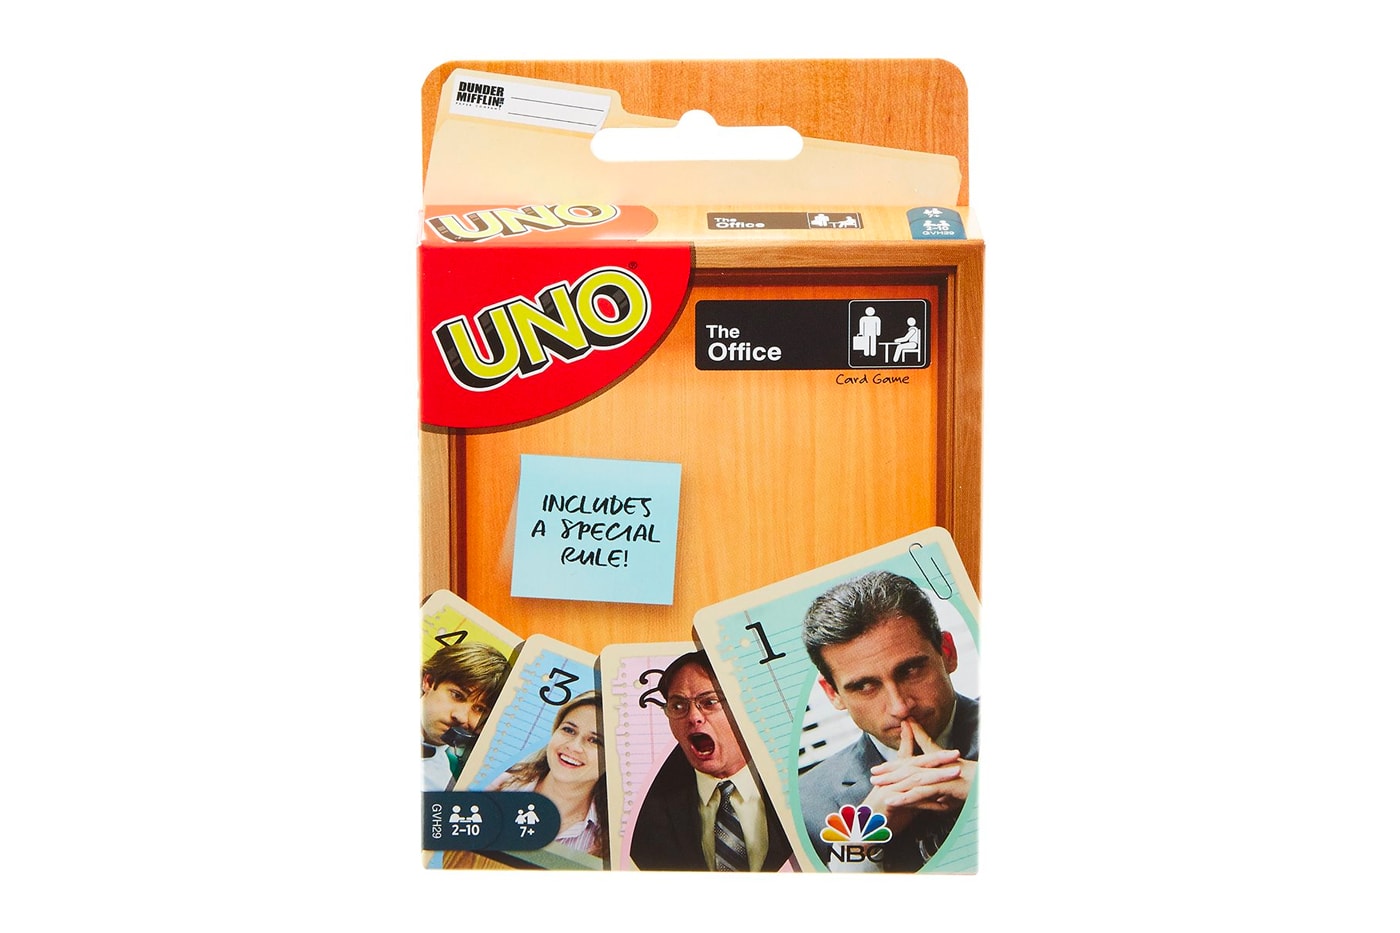 The Office UNO Card Game Release Info Dunder Mifflin nbc steve carrell michael Jim Pam Dwight john krasinski 